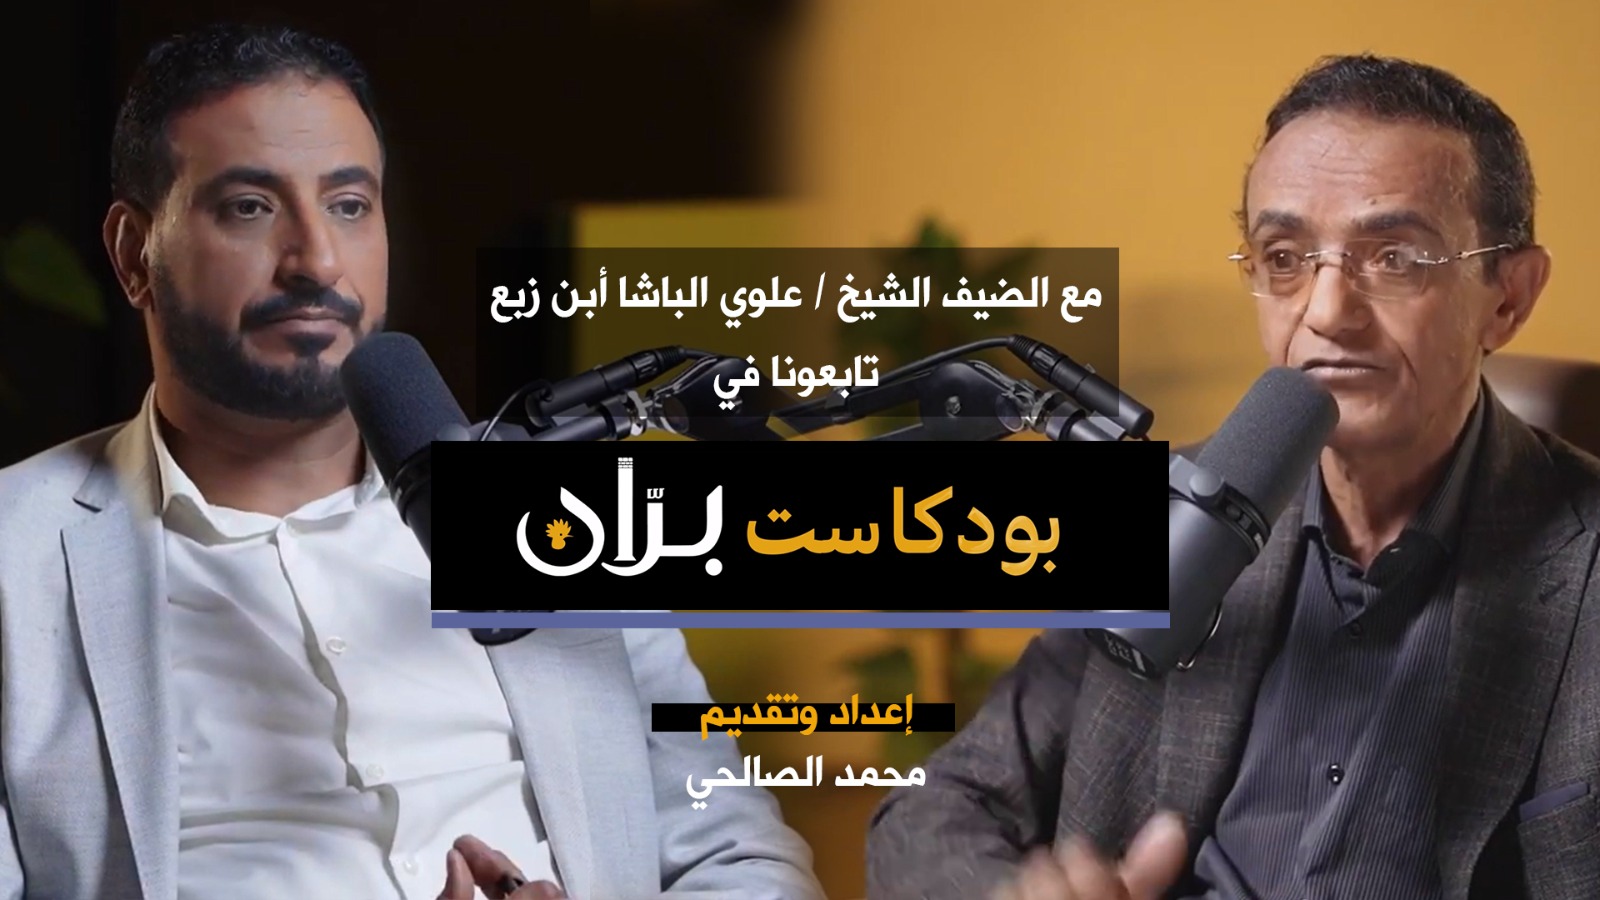 الشيخ “الباشا” يتحدث عن “خطأ استراتيجي” كان سببًا في سقوط فرضة نهم بيد الحوثيين